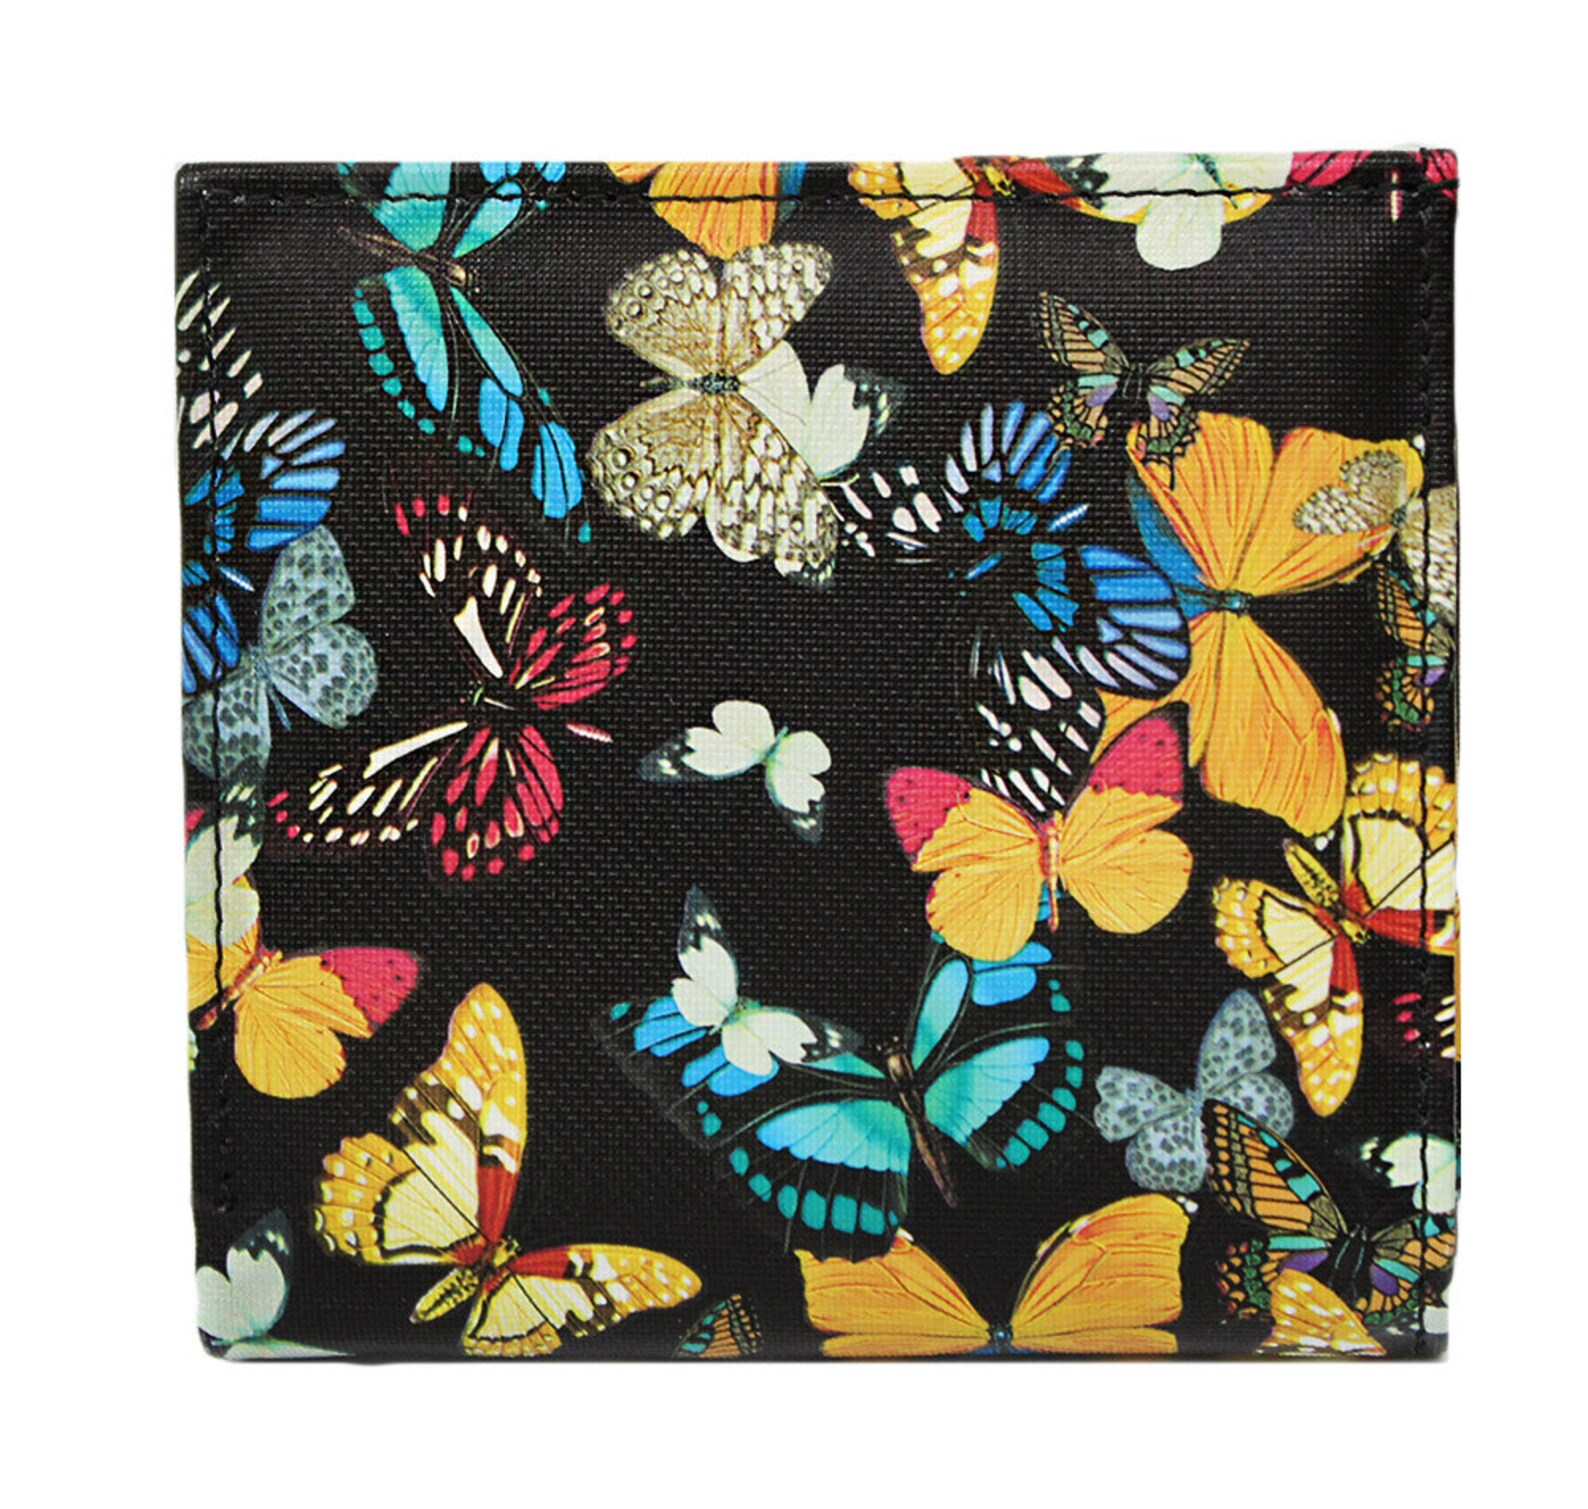 Butterfly wallet Bifold wallet Leather wallet Girls wallet | Etsy